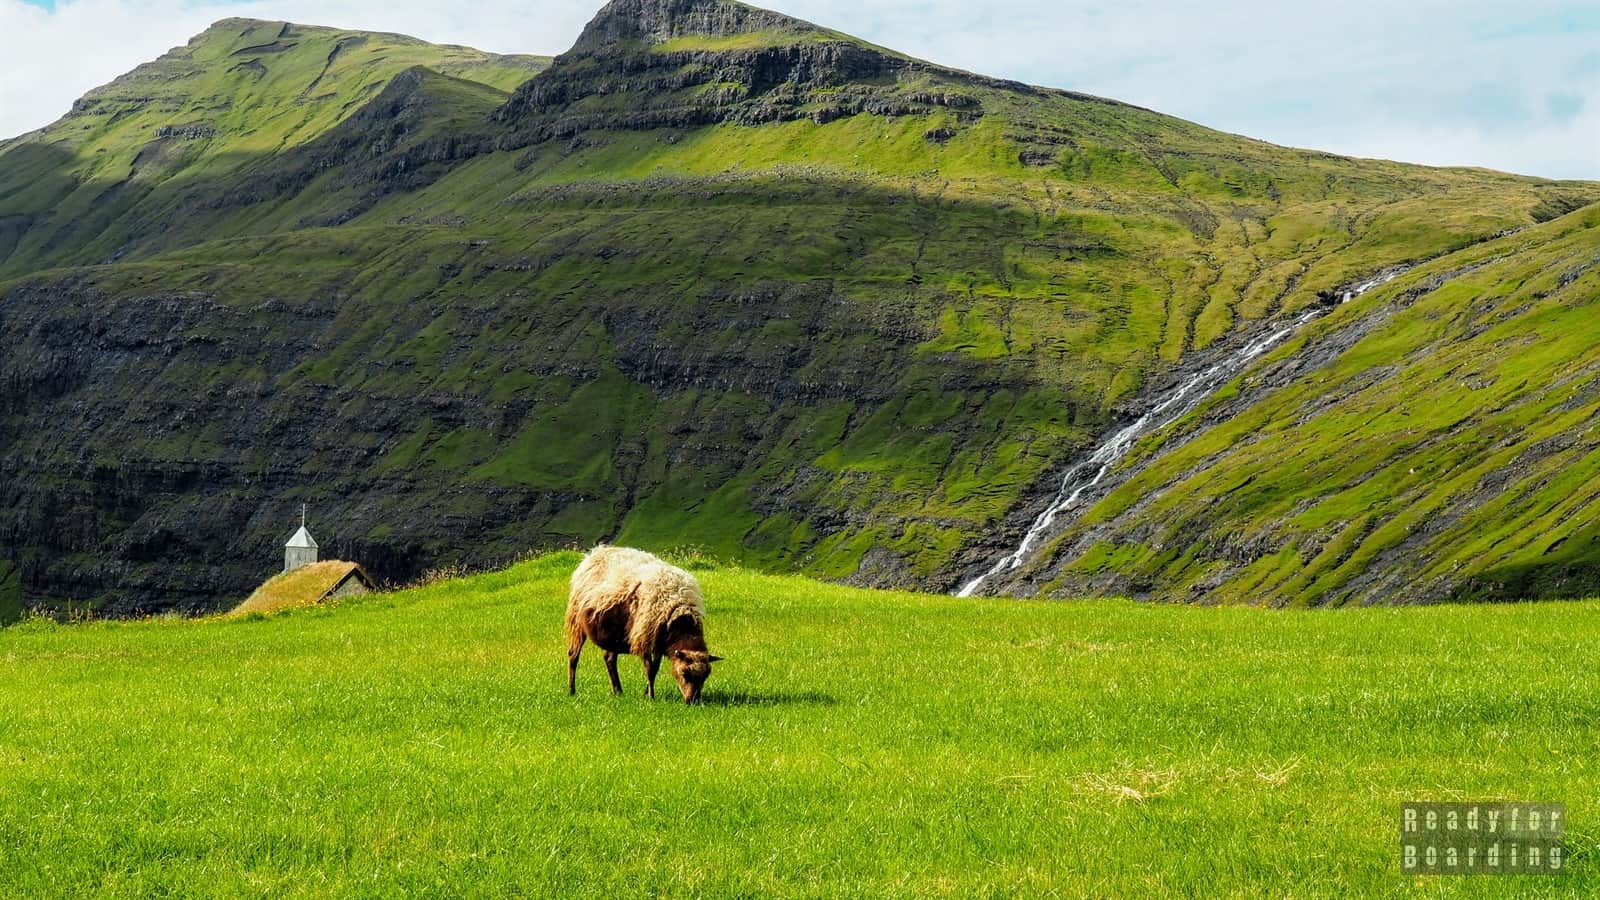 Saksun, Streymoy - Faroe Islands